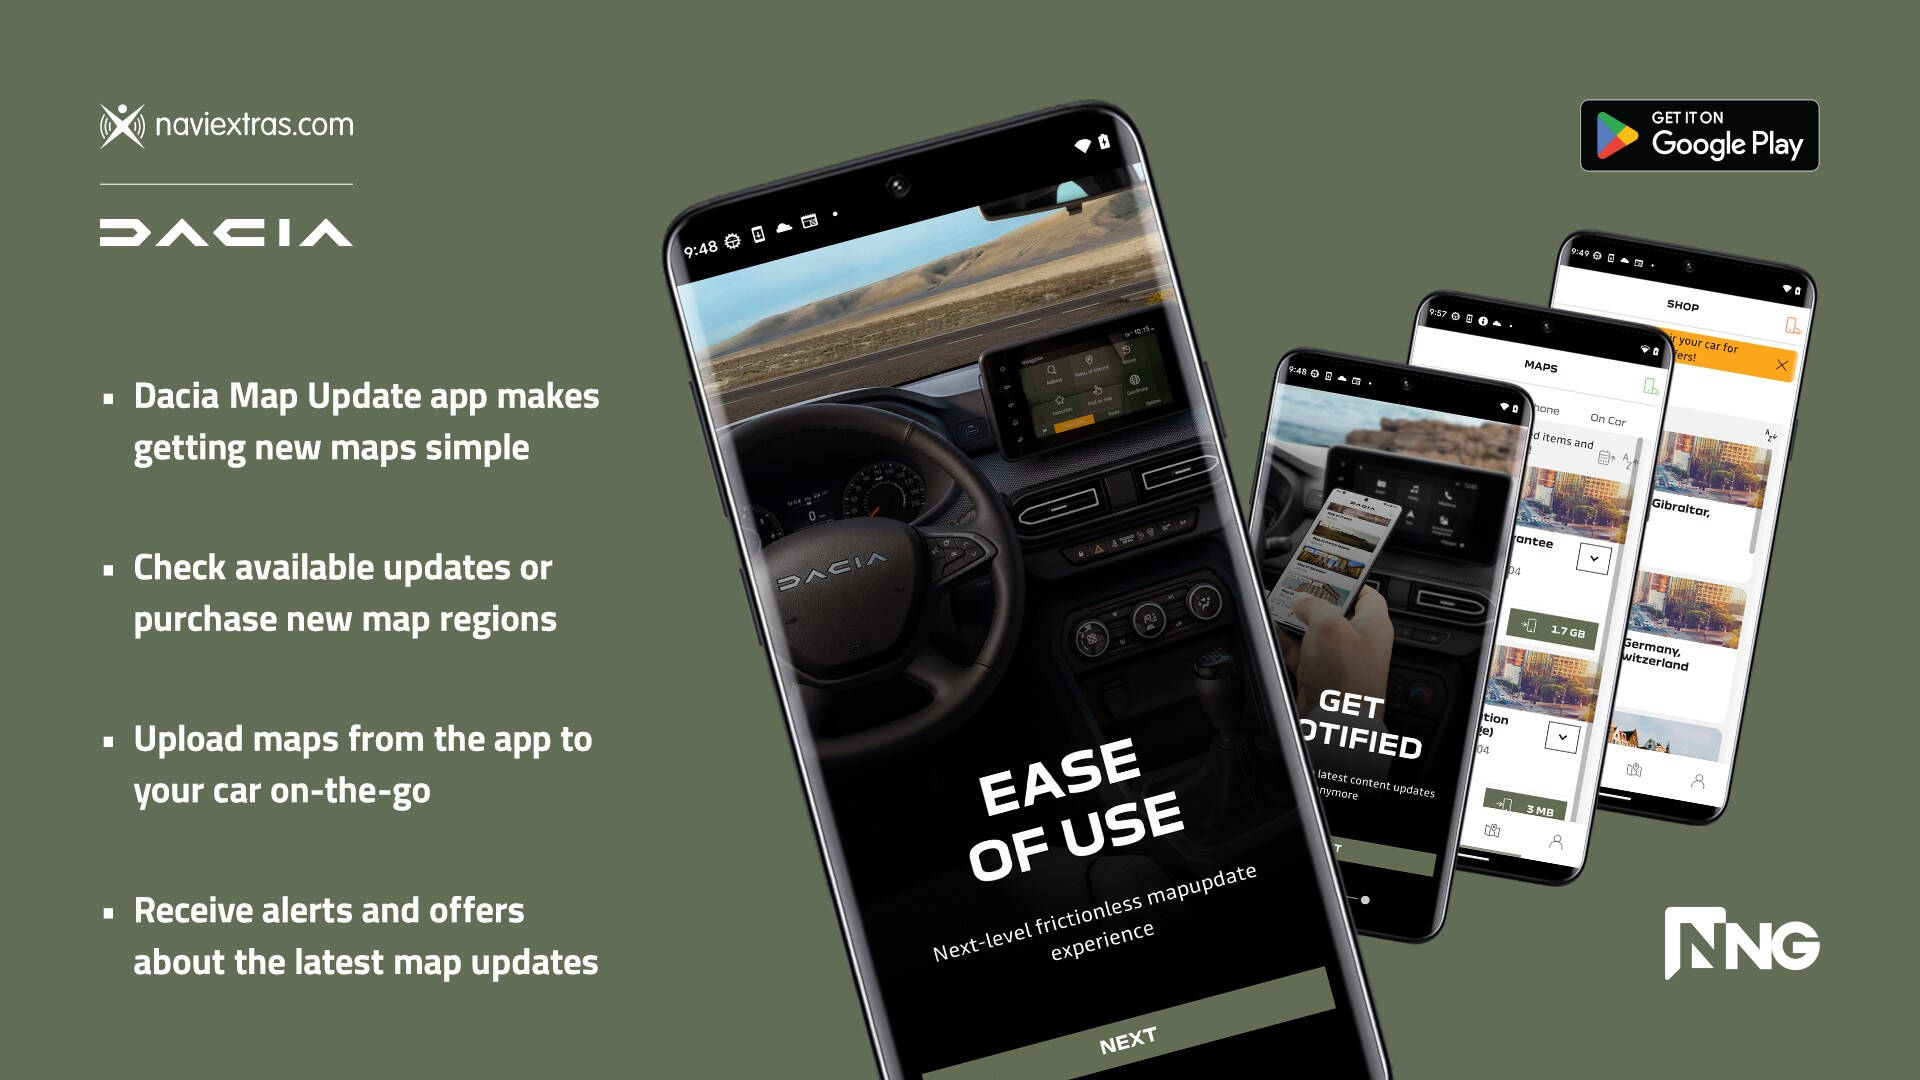 Dacia и NNG — пионеры обновлений карт для смартфонов